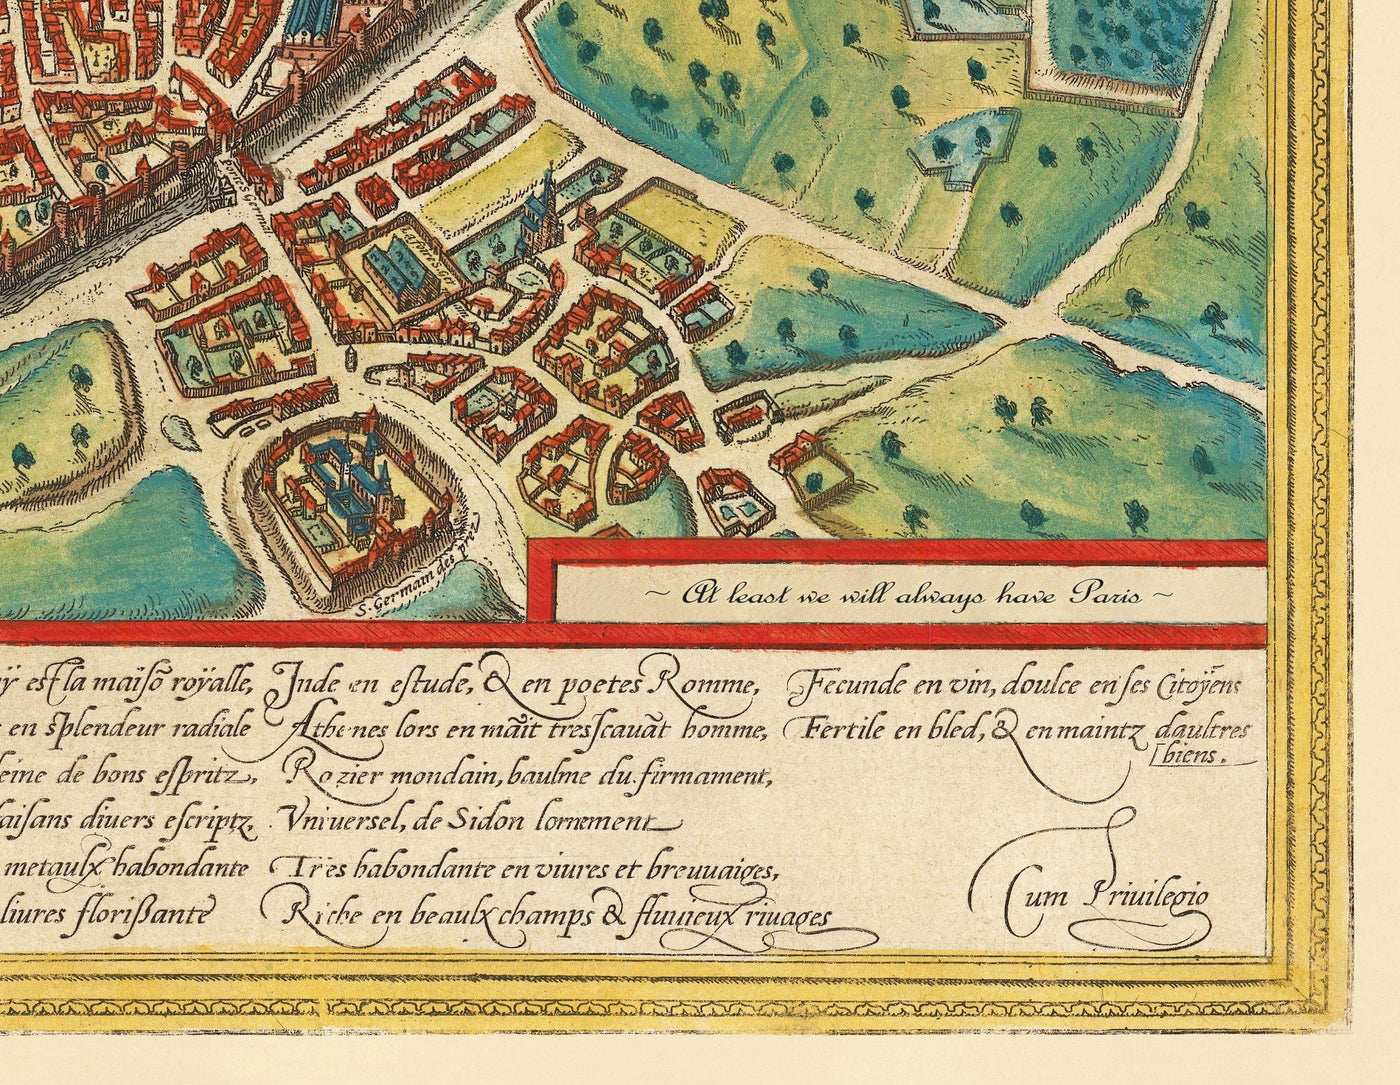 Alte Karte von Lissabon, Portugal von Georg Braun aus dem Jahr 1572 - Burg, Kathedrale, Stadtmauern, Innenstadt, alte Straßen